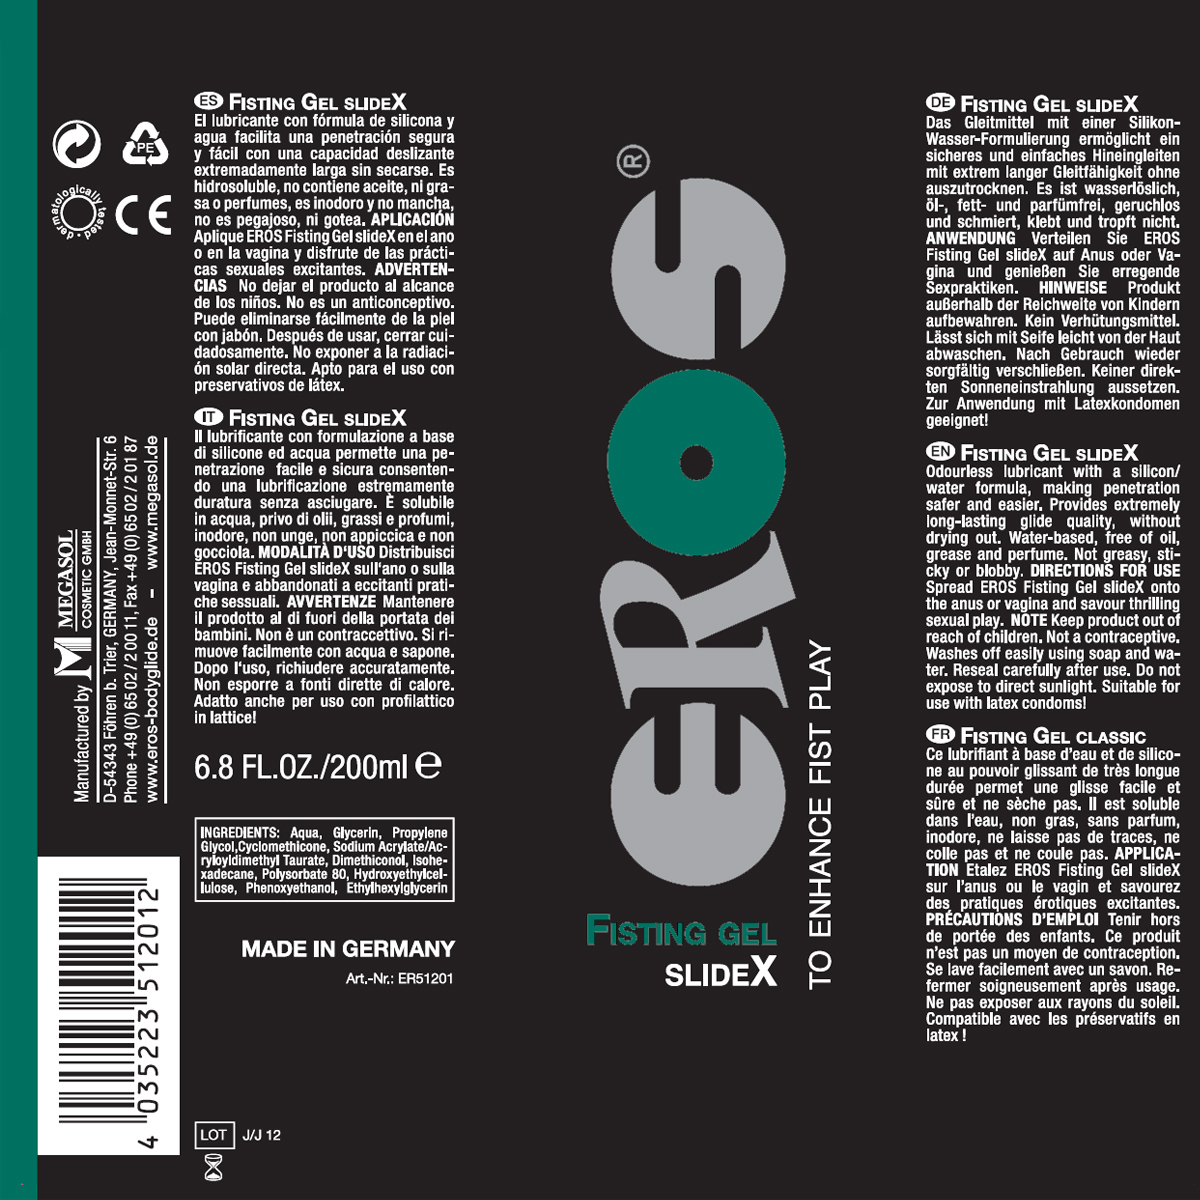 EROS-Fisting-Gel-SlideX-200ml-OPR-EROS-FGS-200-1